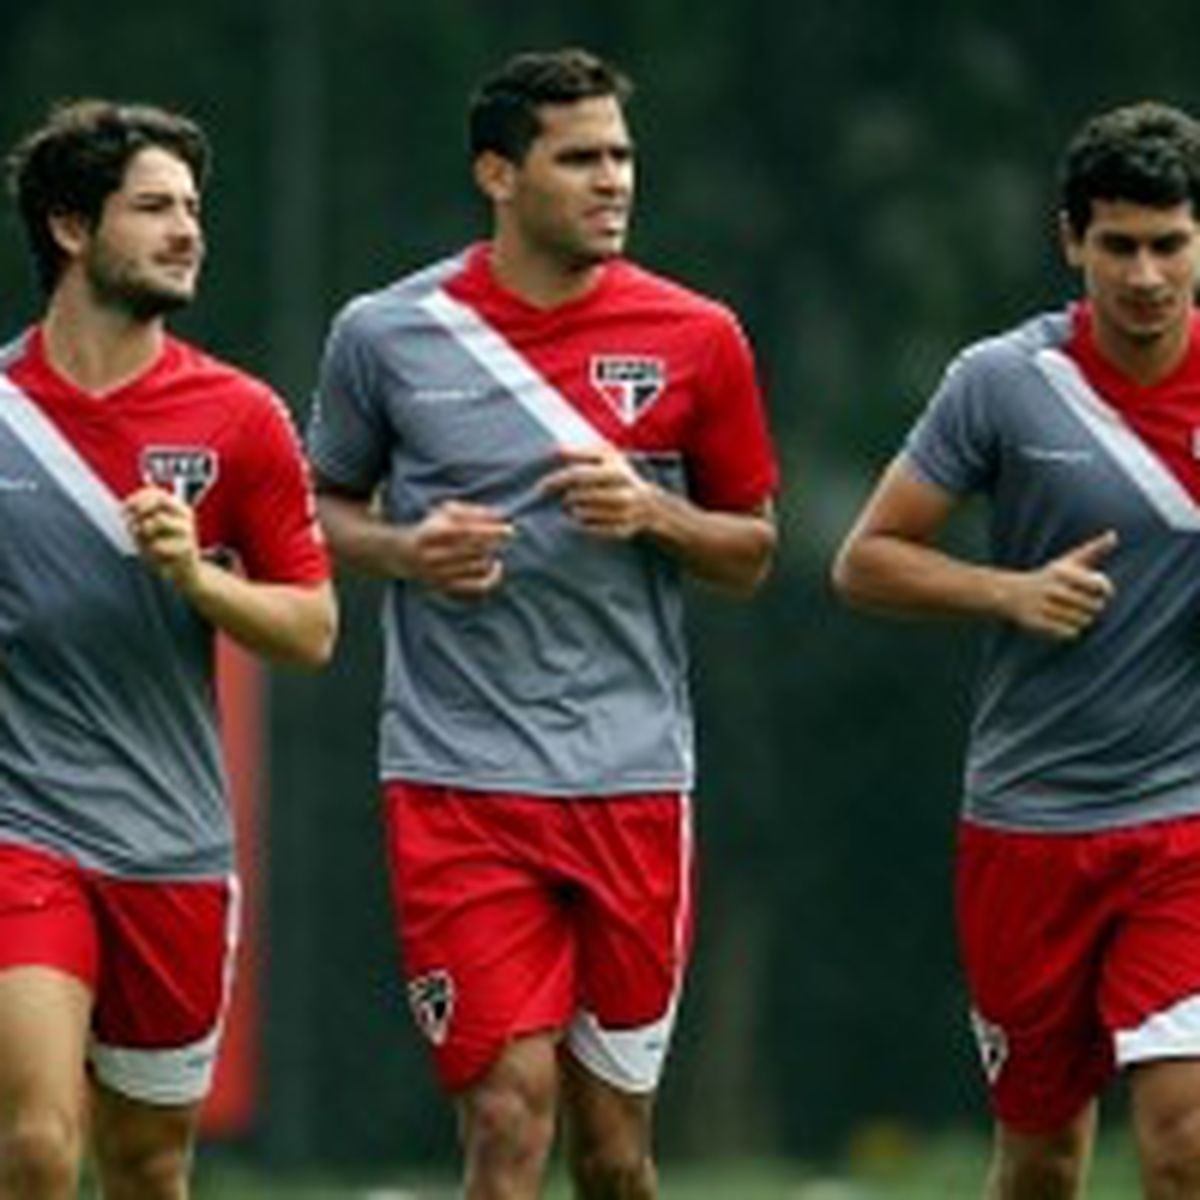 Wesley, Kardec, Pato e Ganso: São Paulo coleciona desafetos de rivais